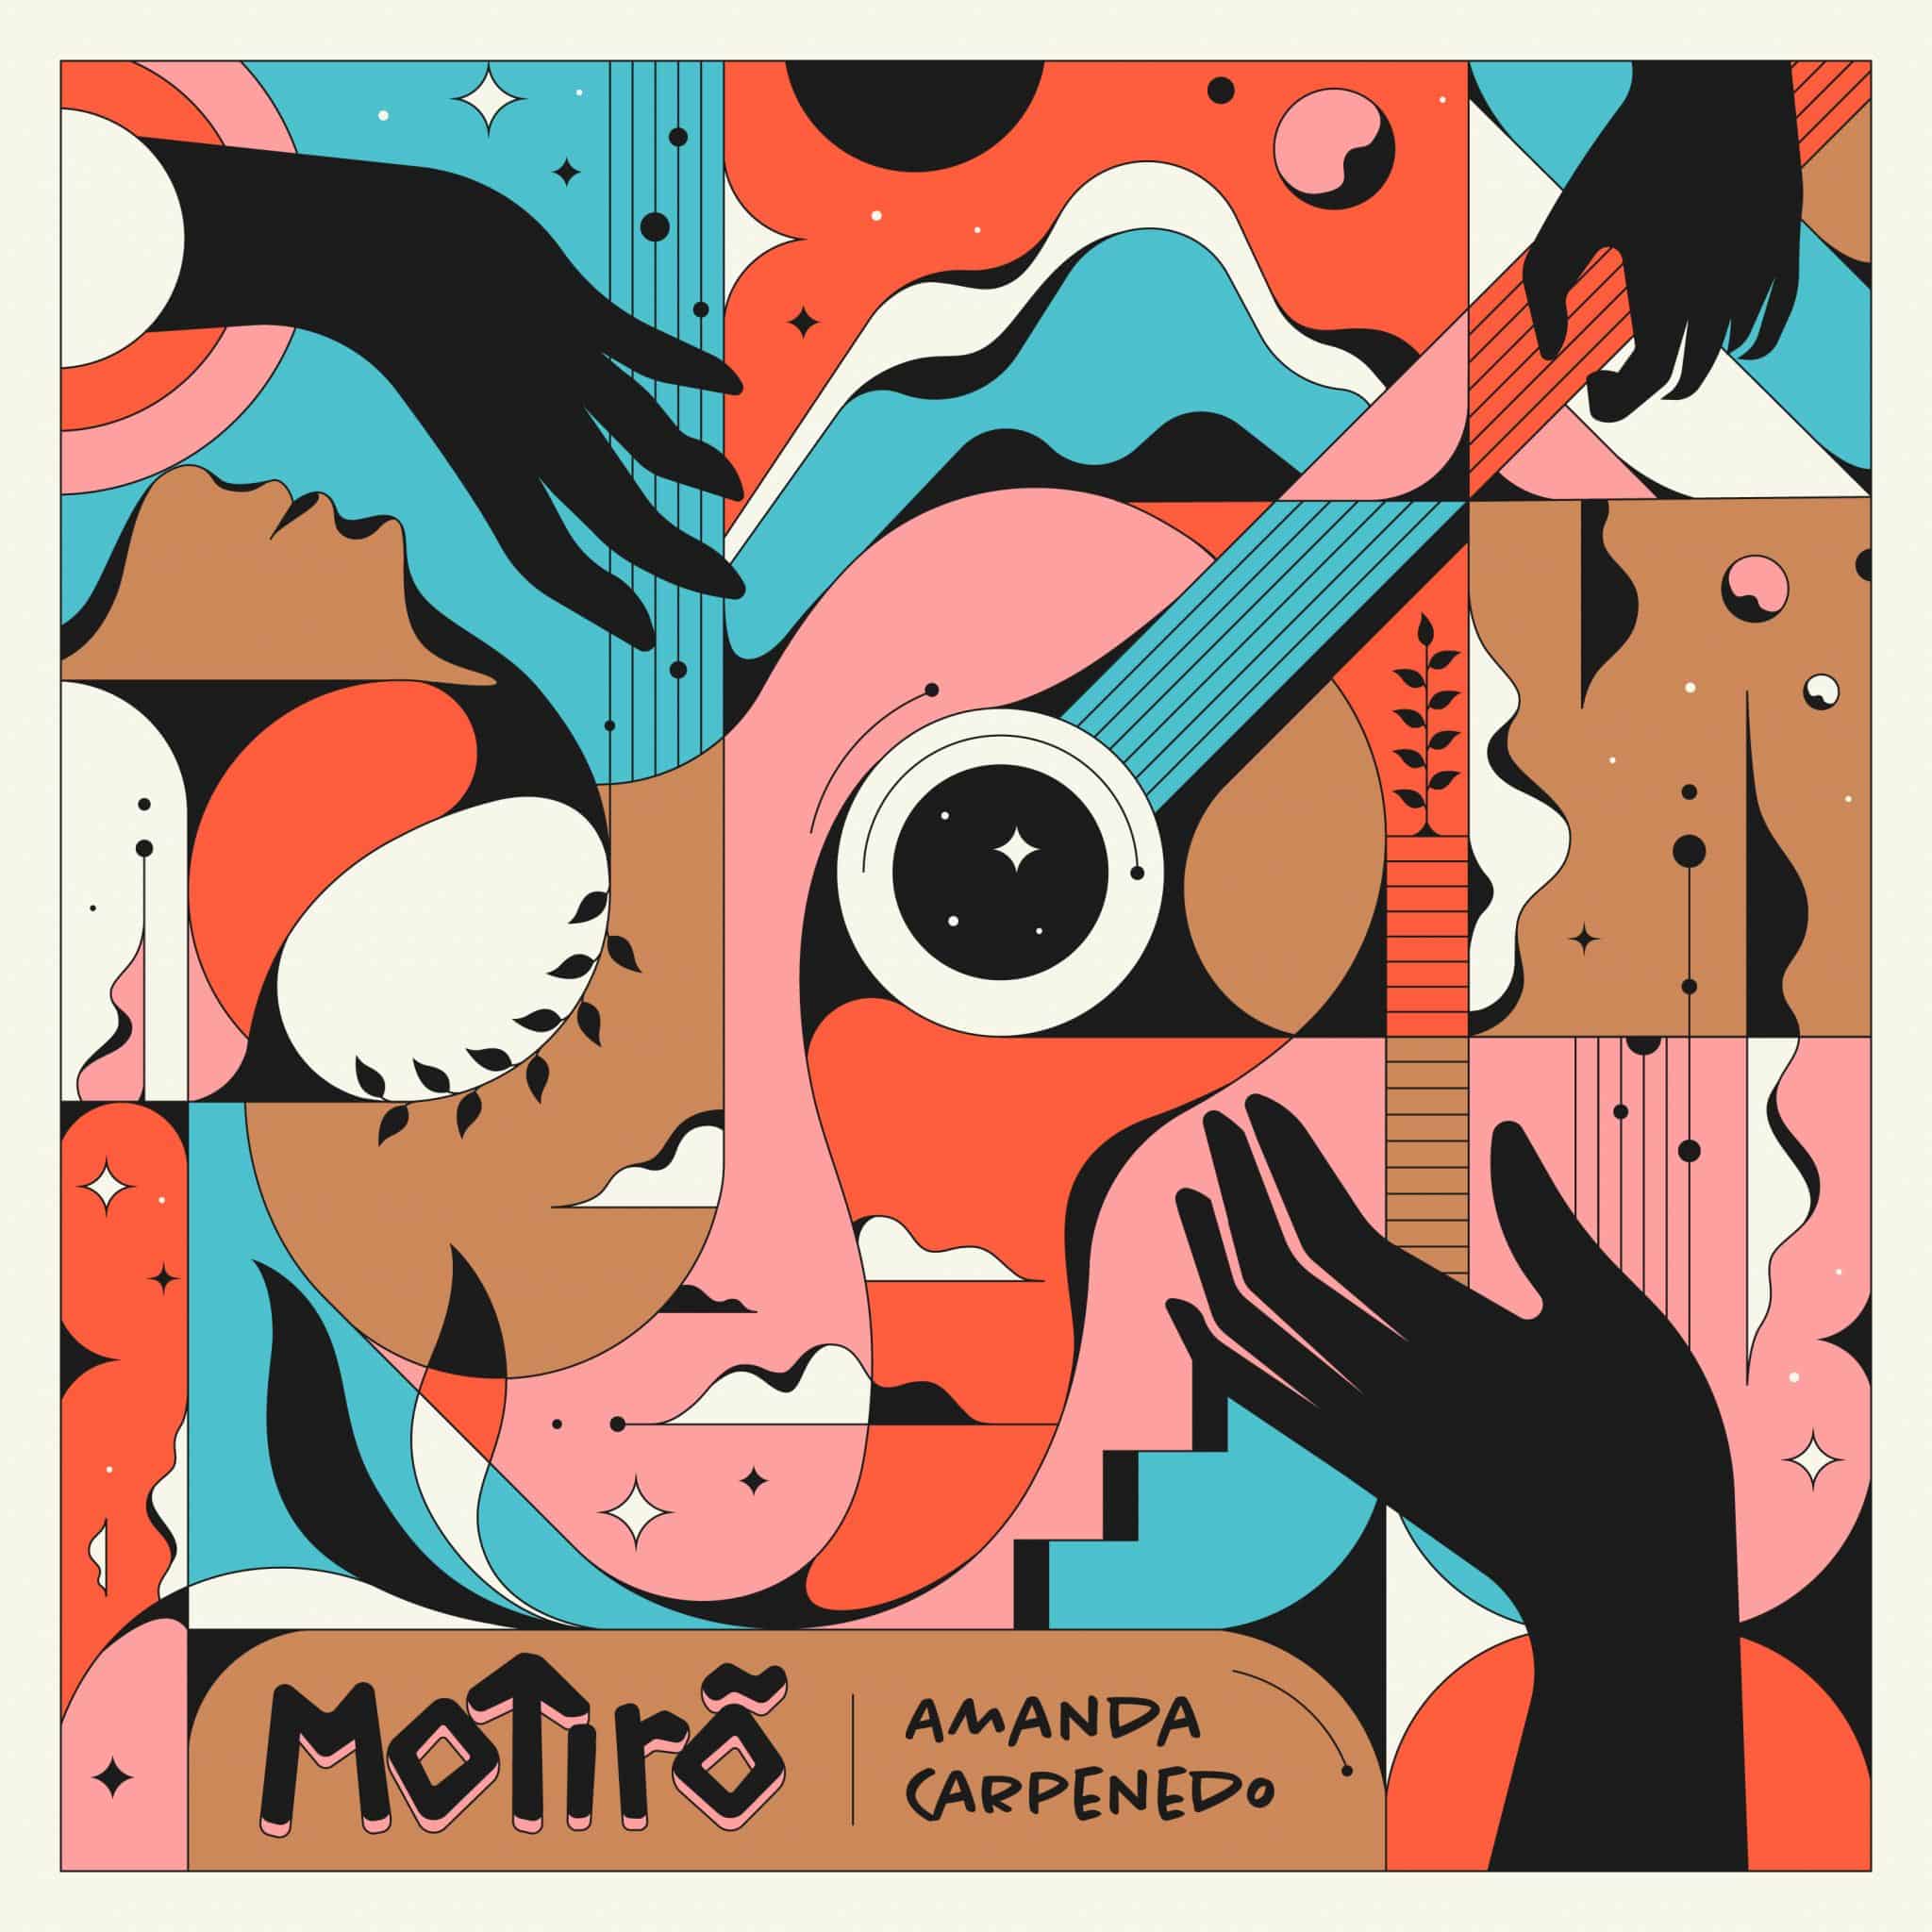 revistaprosaversoearte.com - Amanda Carpenedo, lança o seu primeiro álbum 'Motirõ'